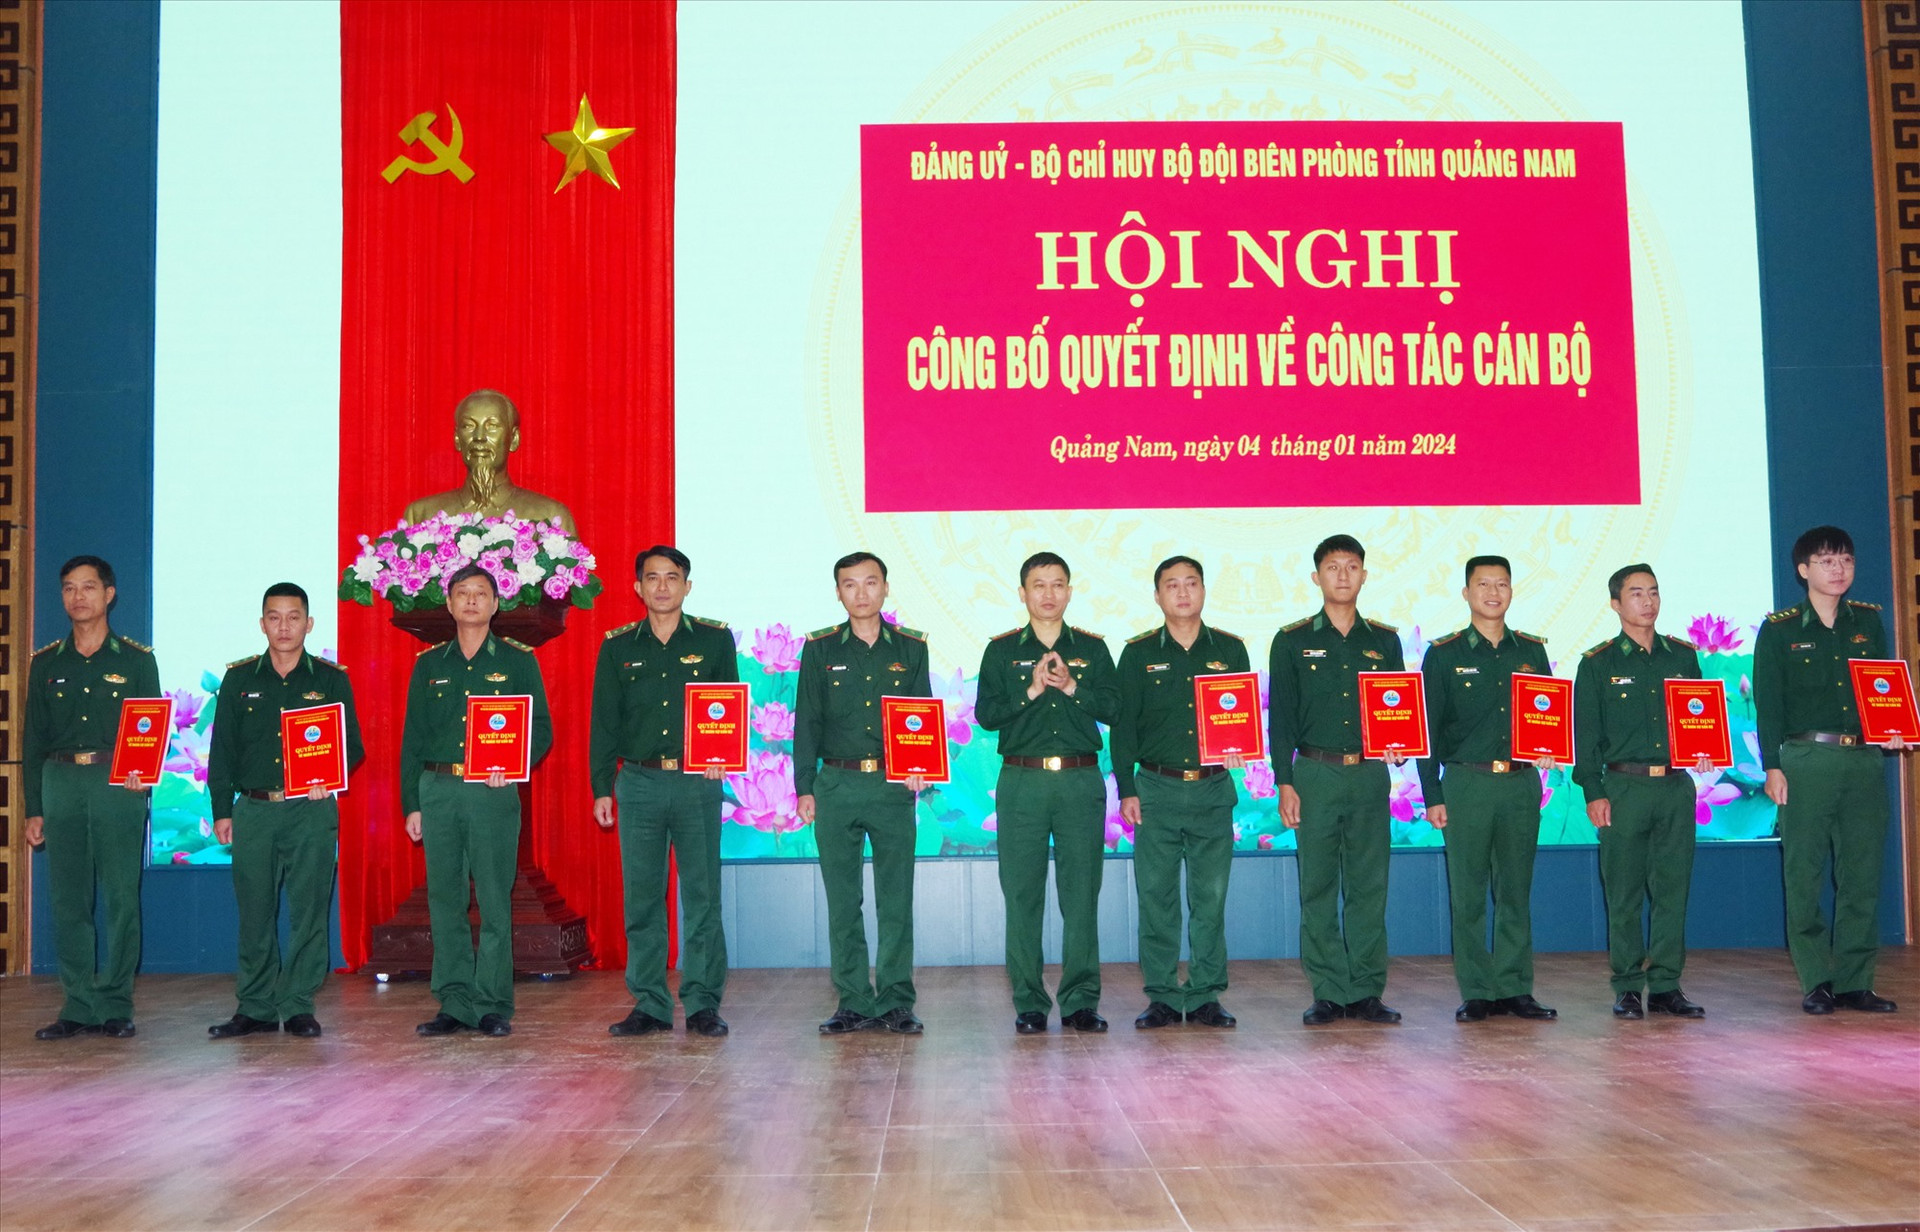 Đại tá Trần Tiến Hiền – Chỉ huy trưởng BĐBP tỉnh trao quyết định điều động, bổ nhiệm cho các cá nhân. Ảnh: HUỲNH CHÍN